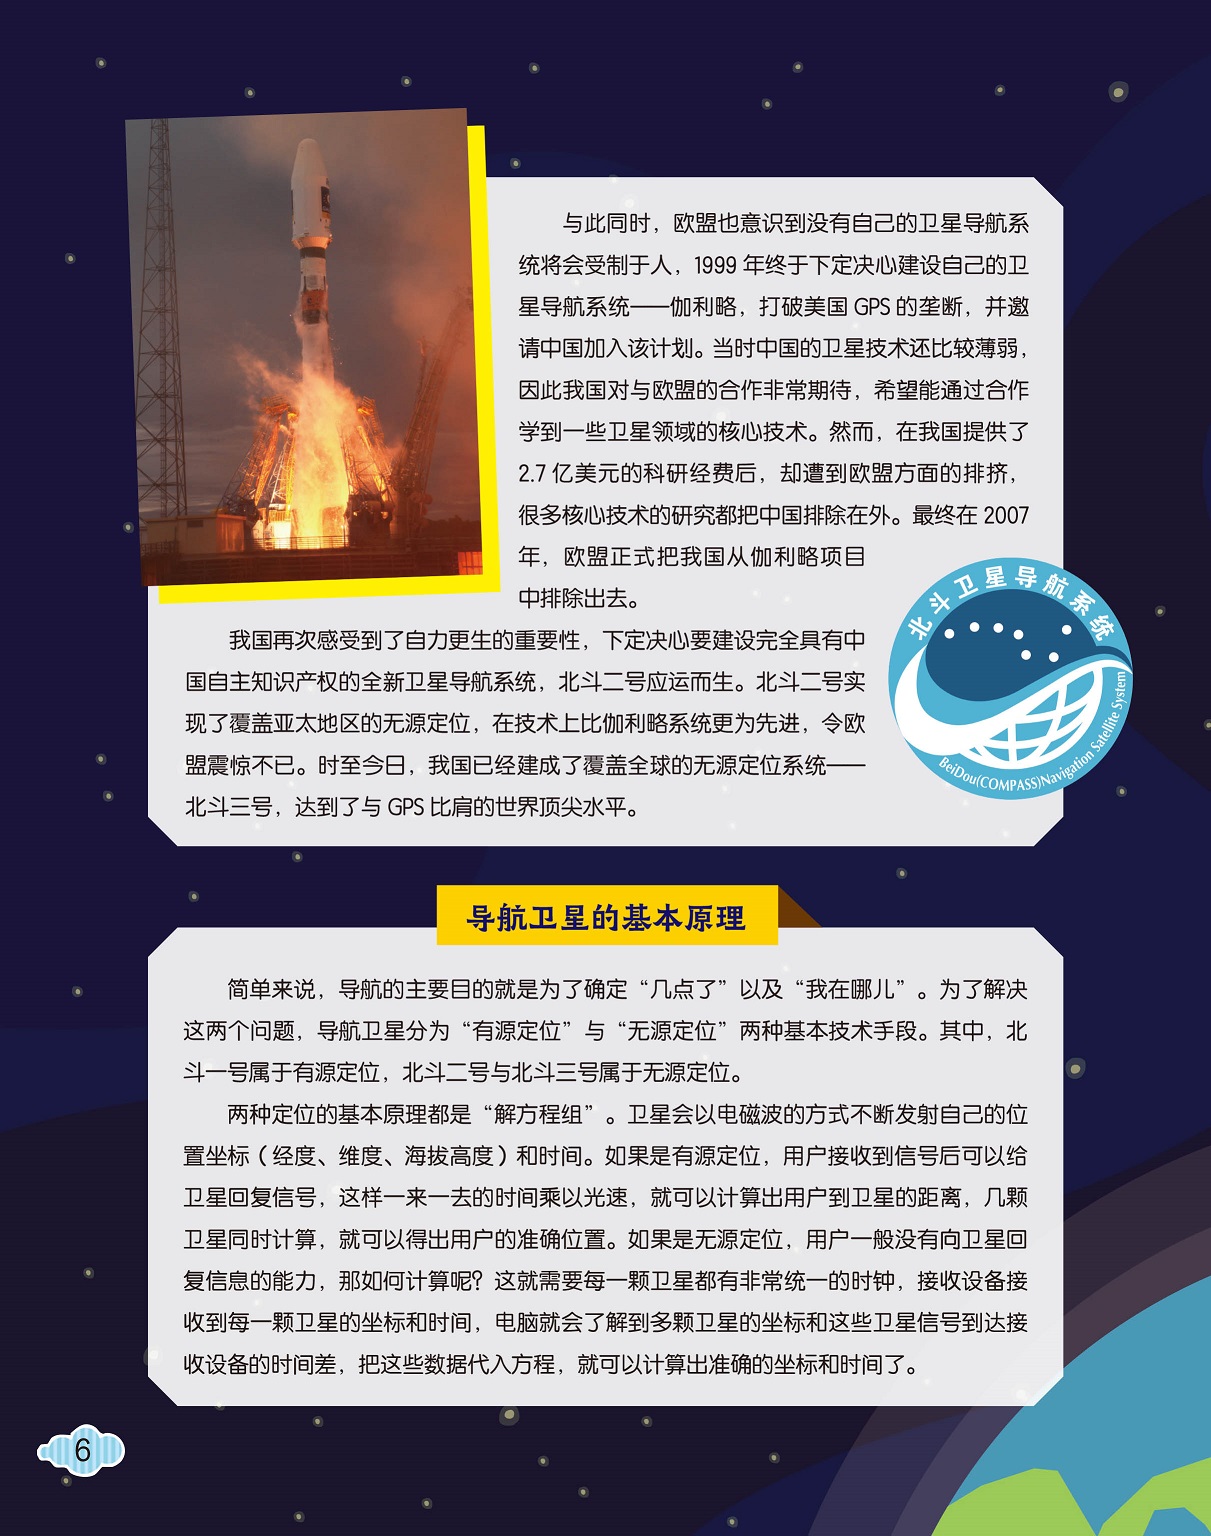 中国卫星技术薄弱,导航卫星的基本原理